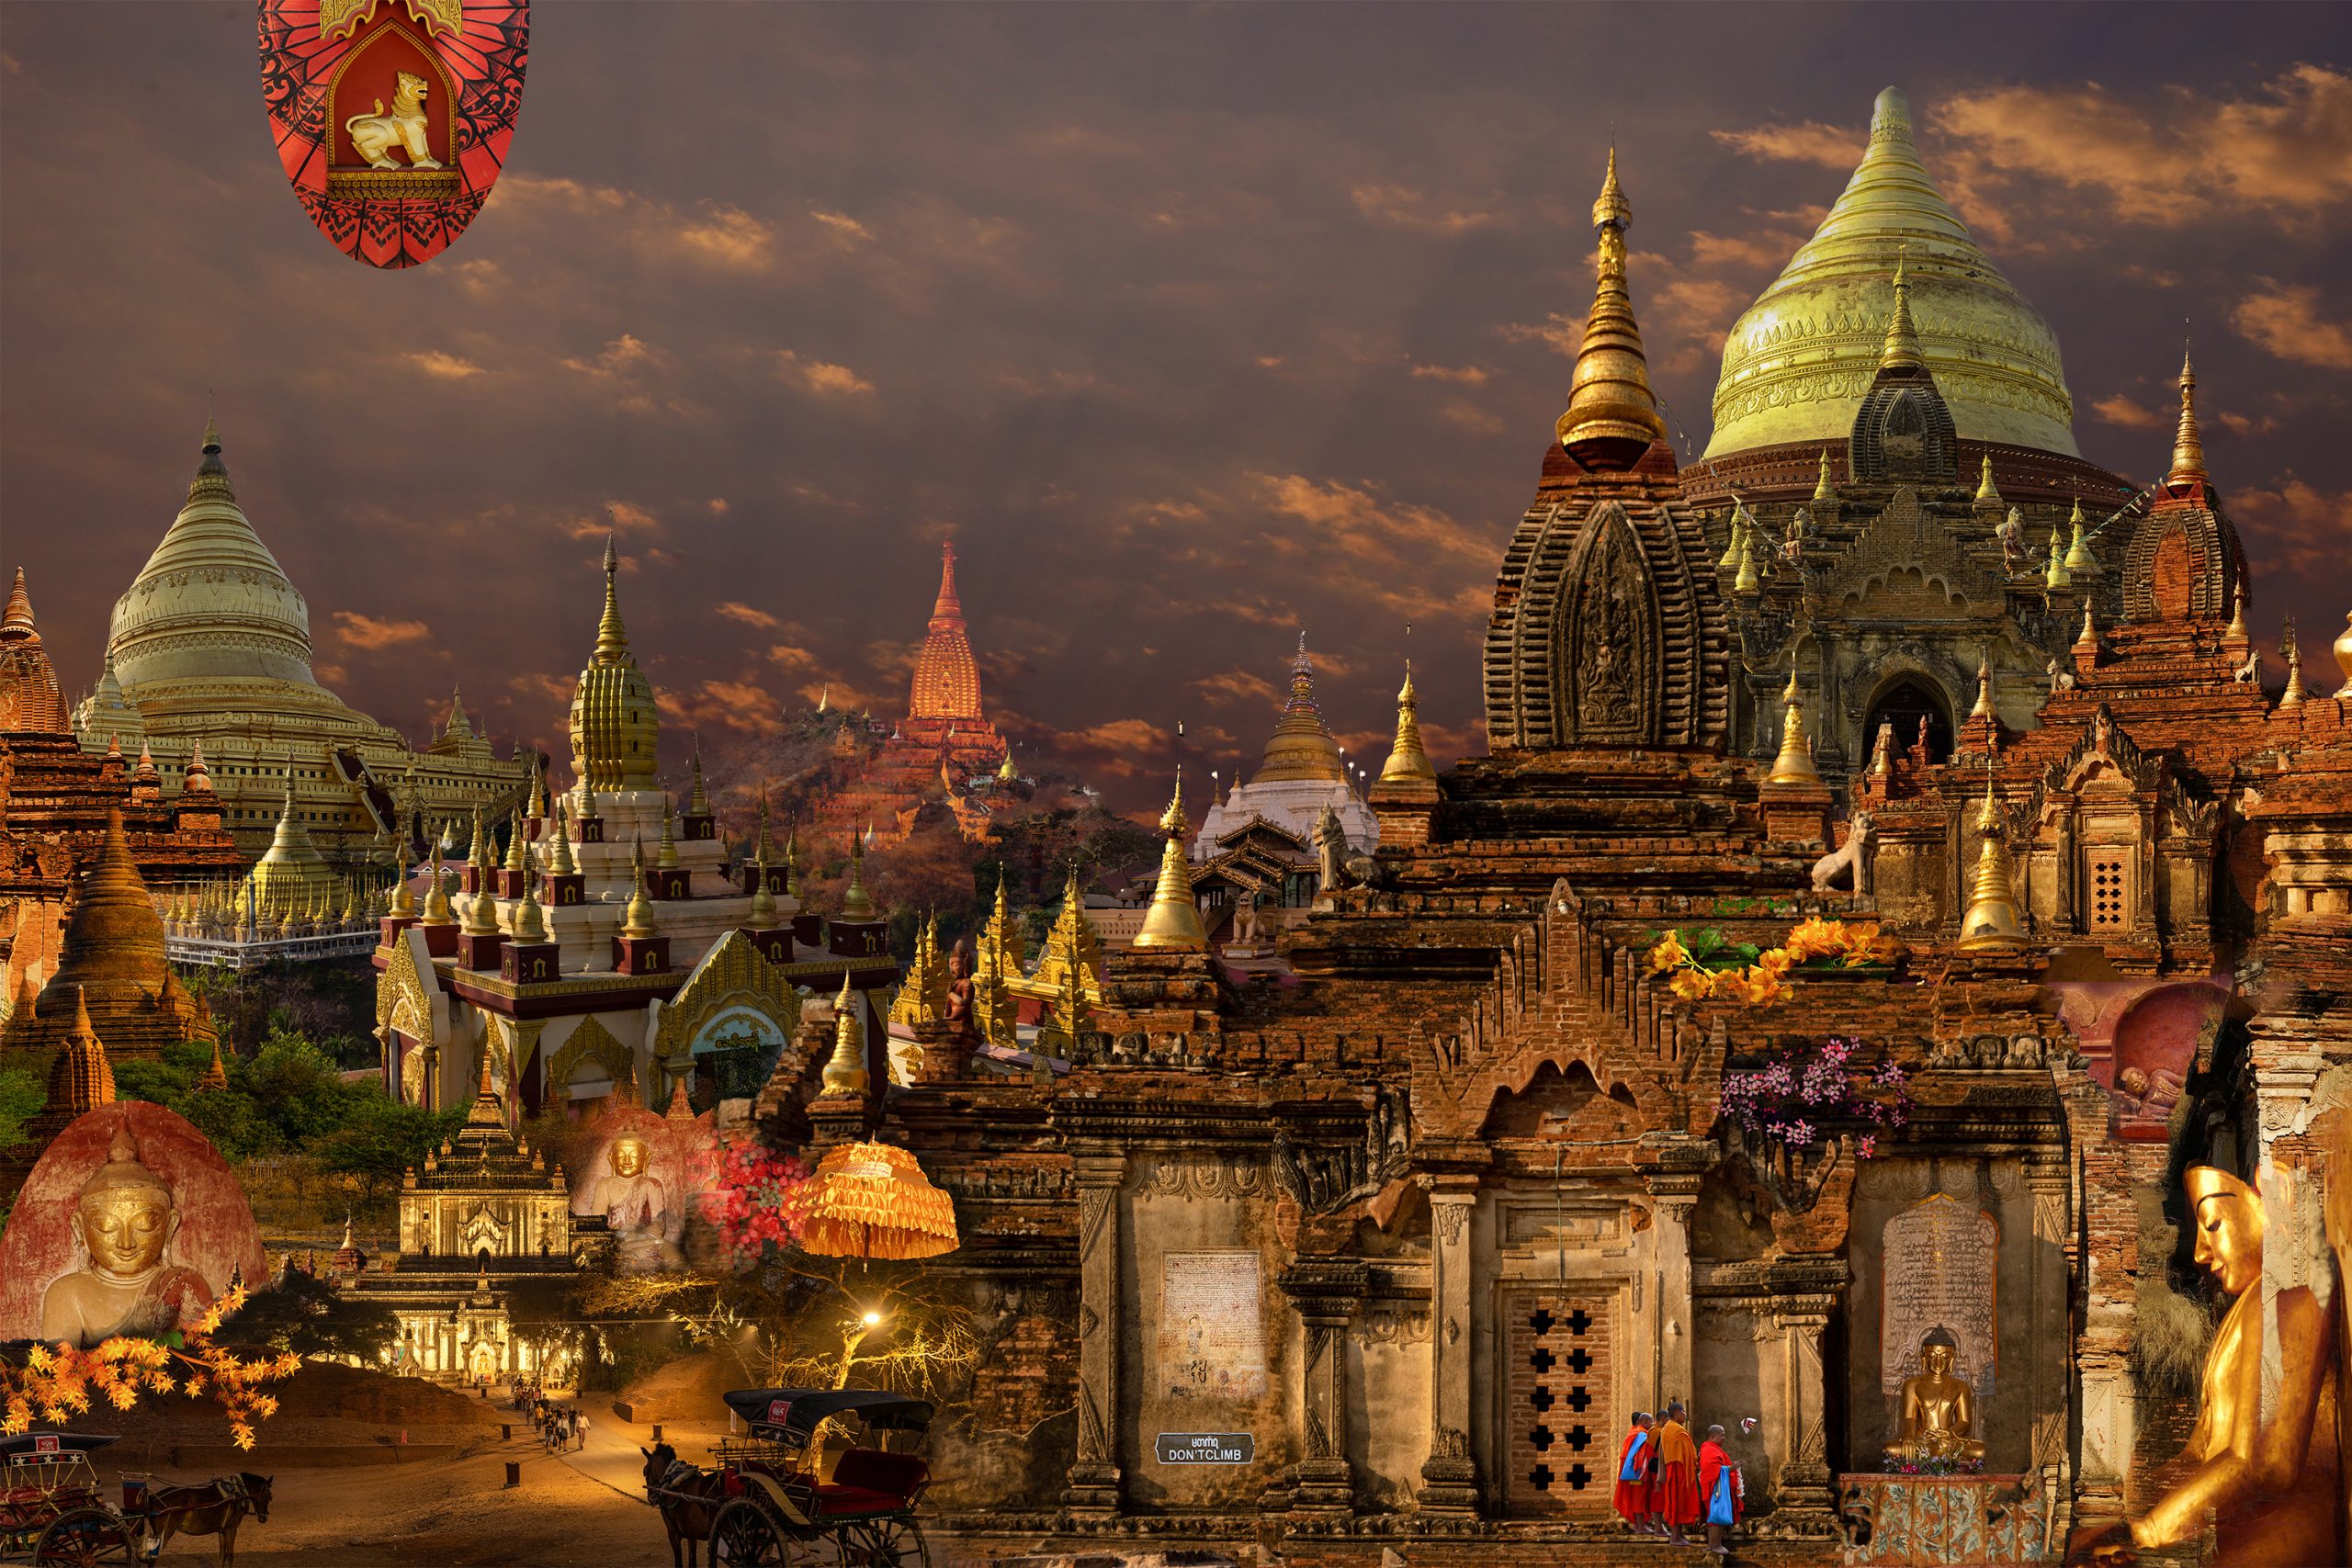 Bagan/Myanmar Collage di foto 120 x 80 cm © René Cassio Scholz. È molto speciale, tranquilllo e molto spirituale Nelle ore serali, un impressionante silenzio meditativo si instaura e la tranquillità come un velo scende sui templi del Patrimonio Mondiale dell'Umanità. Bagan è situato sul fiume Ayeyawady in Myanmar centrale. Su una superficie di 30 kmq con piccoli villaggi e campi coltivati ci sono oltre 3.000 templi e pagode, alcuni dei quali sono impressionanti di epoche diverse.